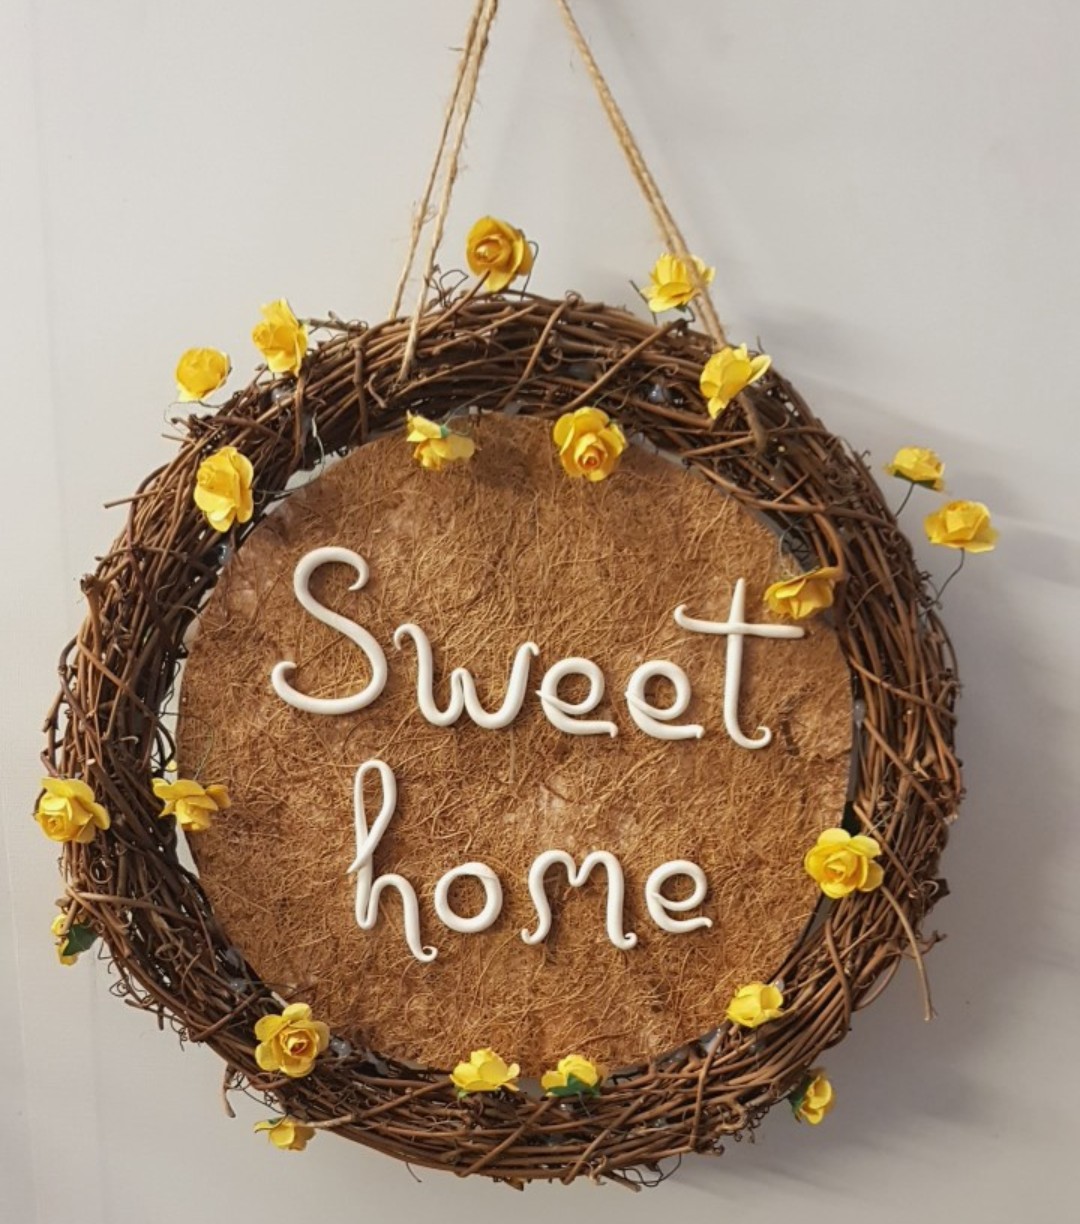 Vòng hoa trang trí, vòng hoa gỗ kết hợp cùng thông điệp "Sweet Home", phụ kiện trang trí nhà cửa xinh xắn. Món quà dễ thương dành tặng  bạn bè, người thân. Giao từ HCM